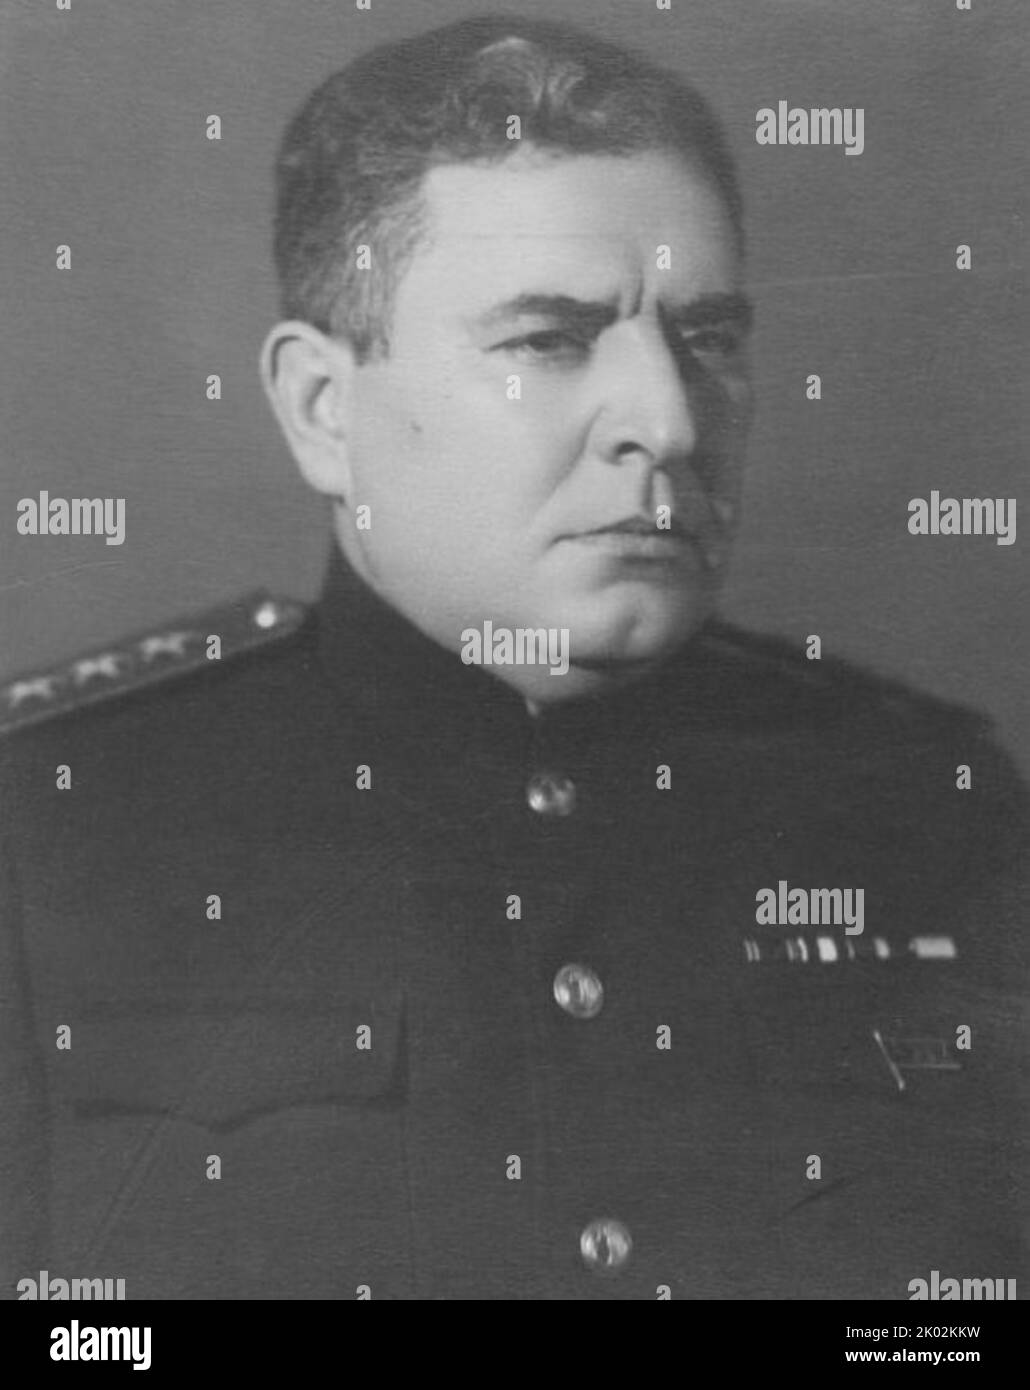 Ivan Stepanovich Yumashev (1895 - 1972) ammiraglio della Marina sovietica, Eroe dell'Unione Sovietica (14 settembre 1945), e comandante in capo della Marina sovietica dal gennaio 1947 al luglio 1951 Foto Stock